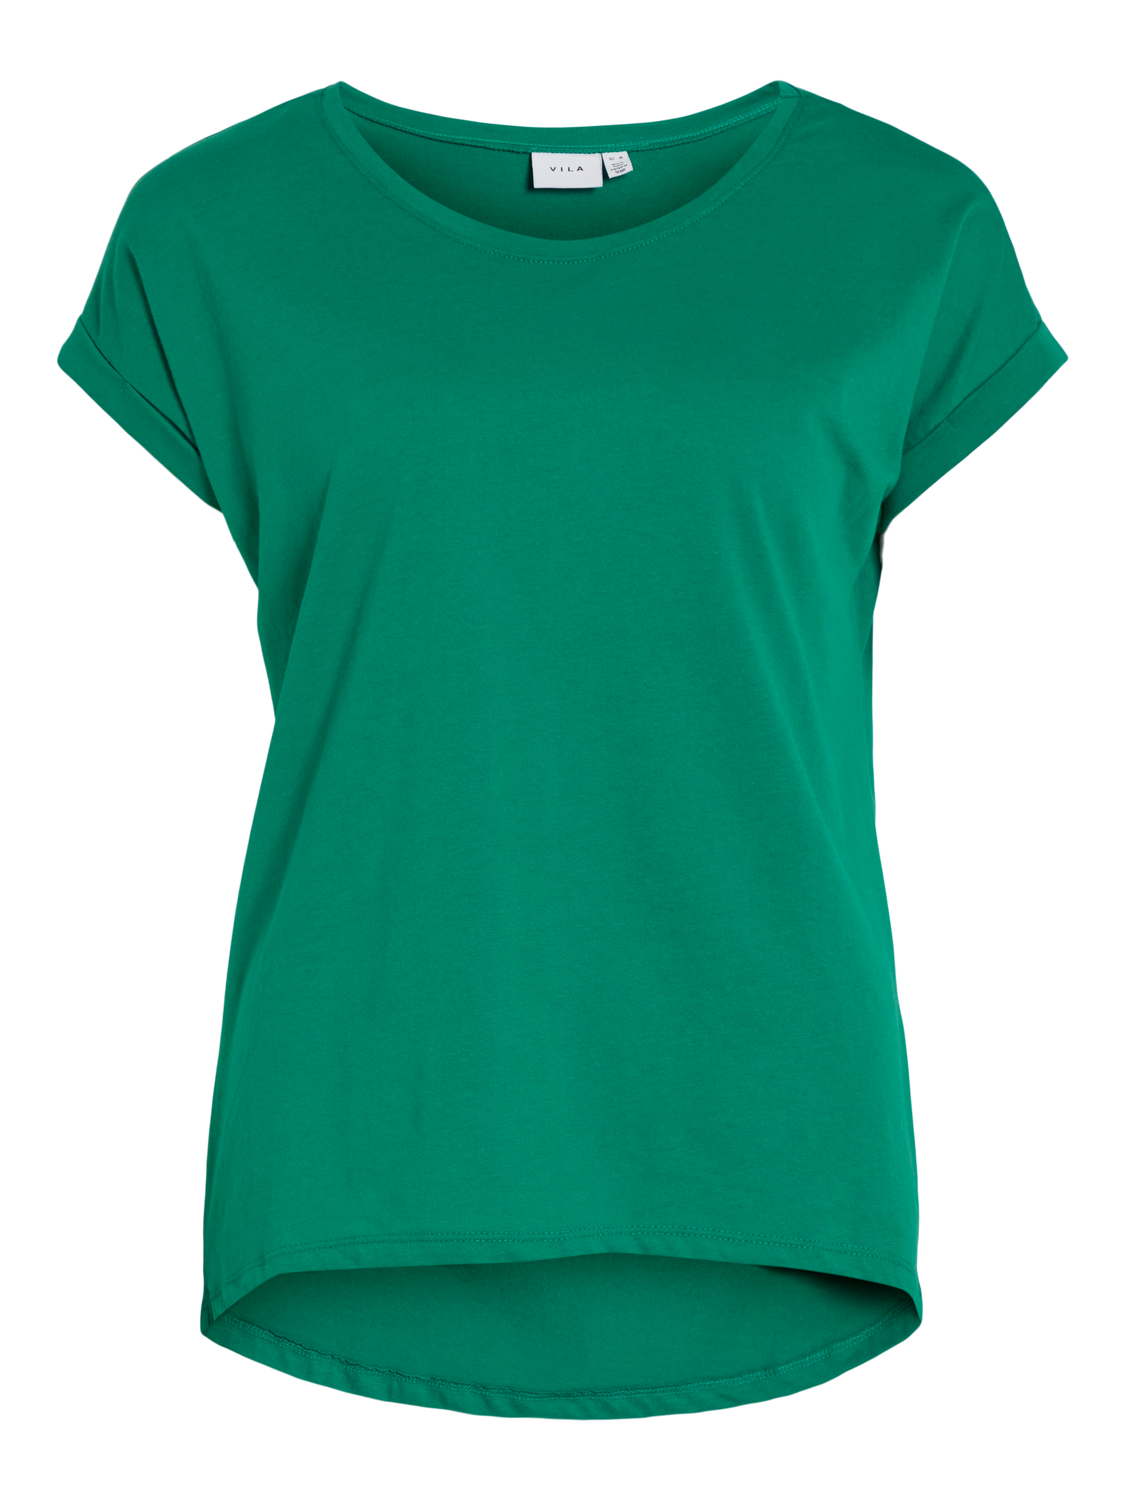 VIDREAMERS T-Shirt - Ultramarine Green